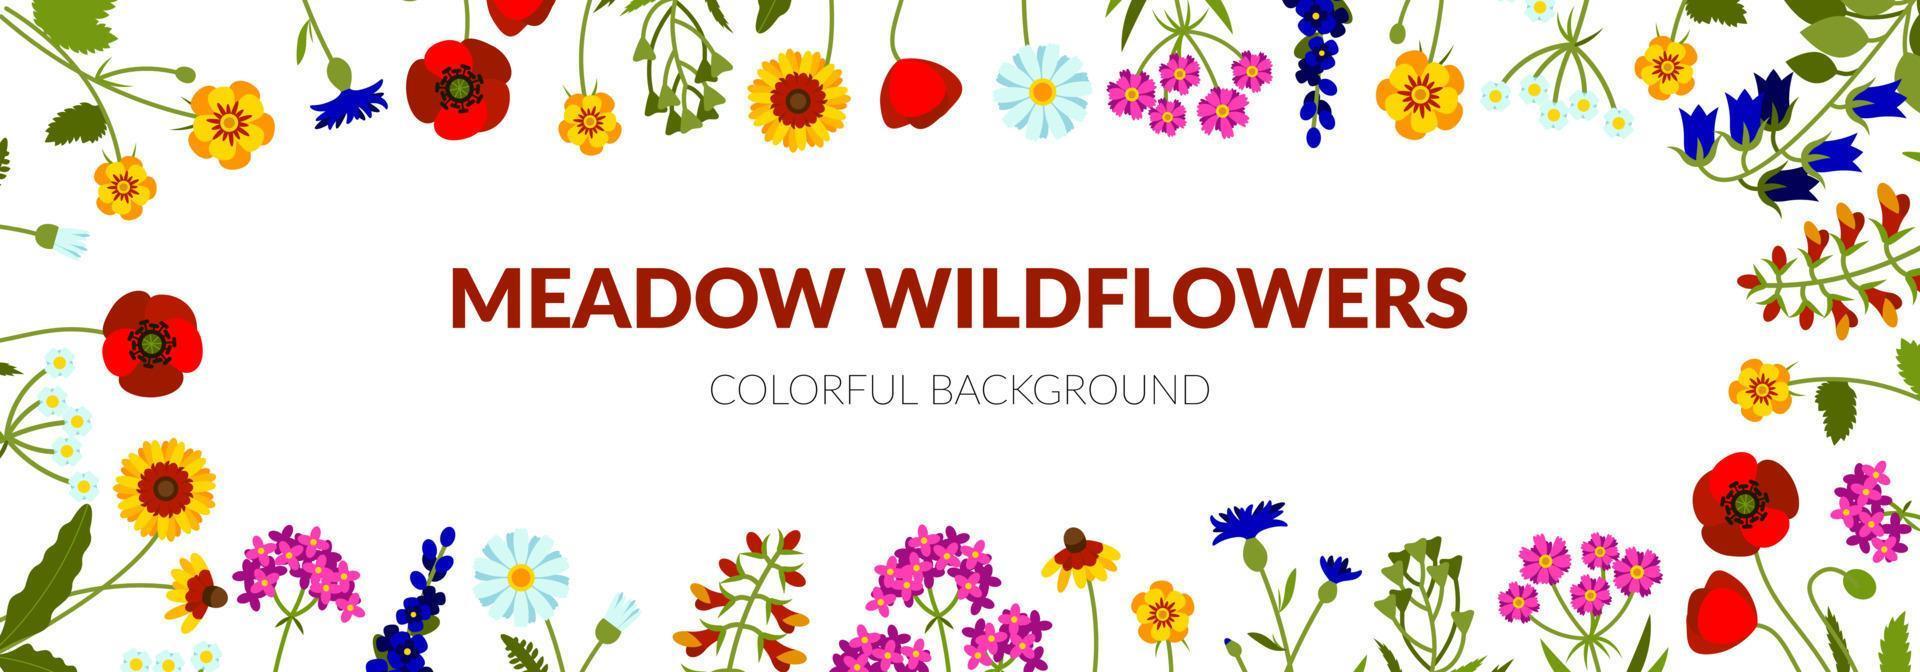 horizontale zomerbanner met wilde bloemen, waaronder klokje, duizendblad, echinacea, klaproos, leeuwebek, lavendel, damestasje, korenbloem vector